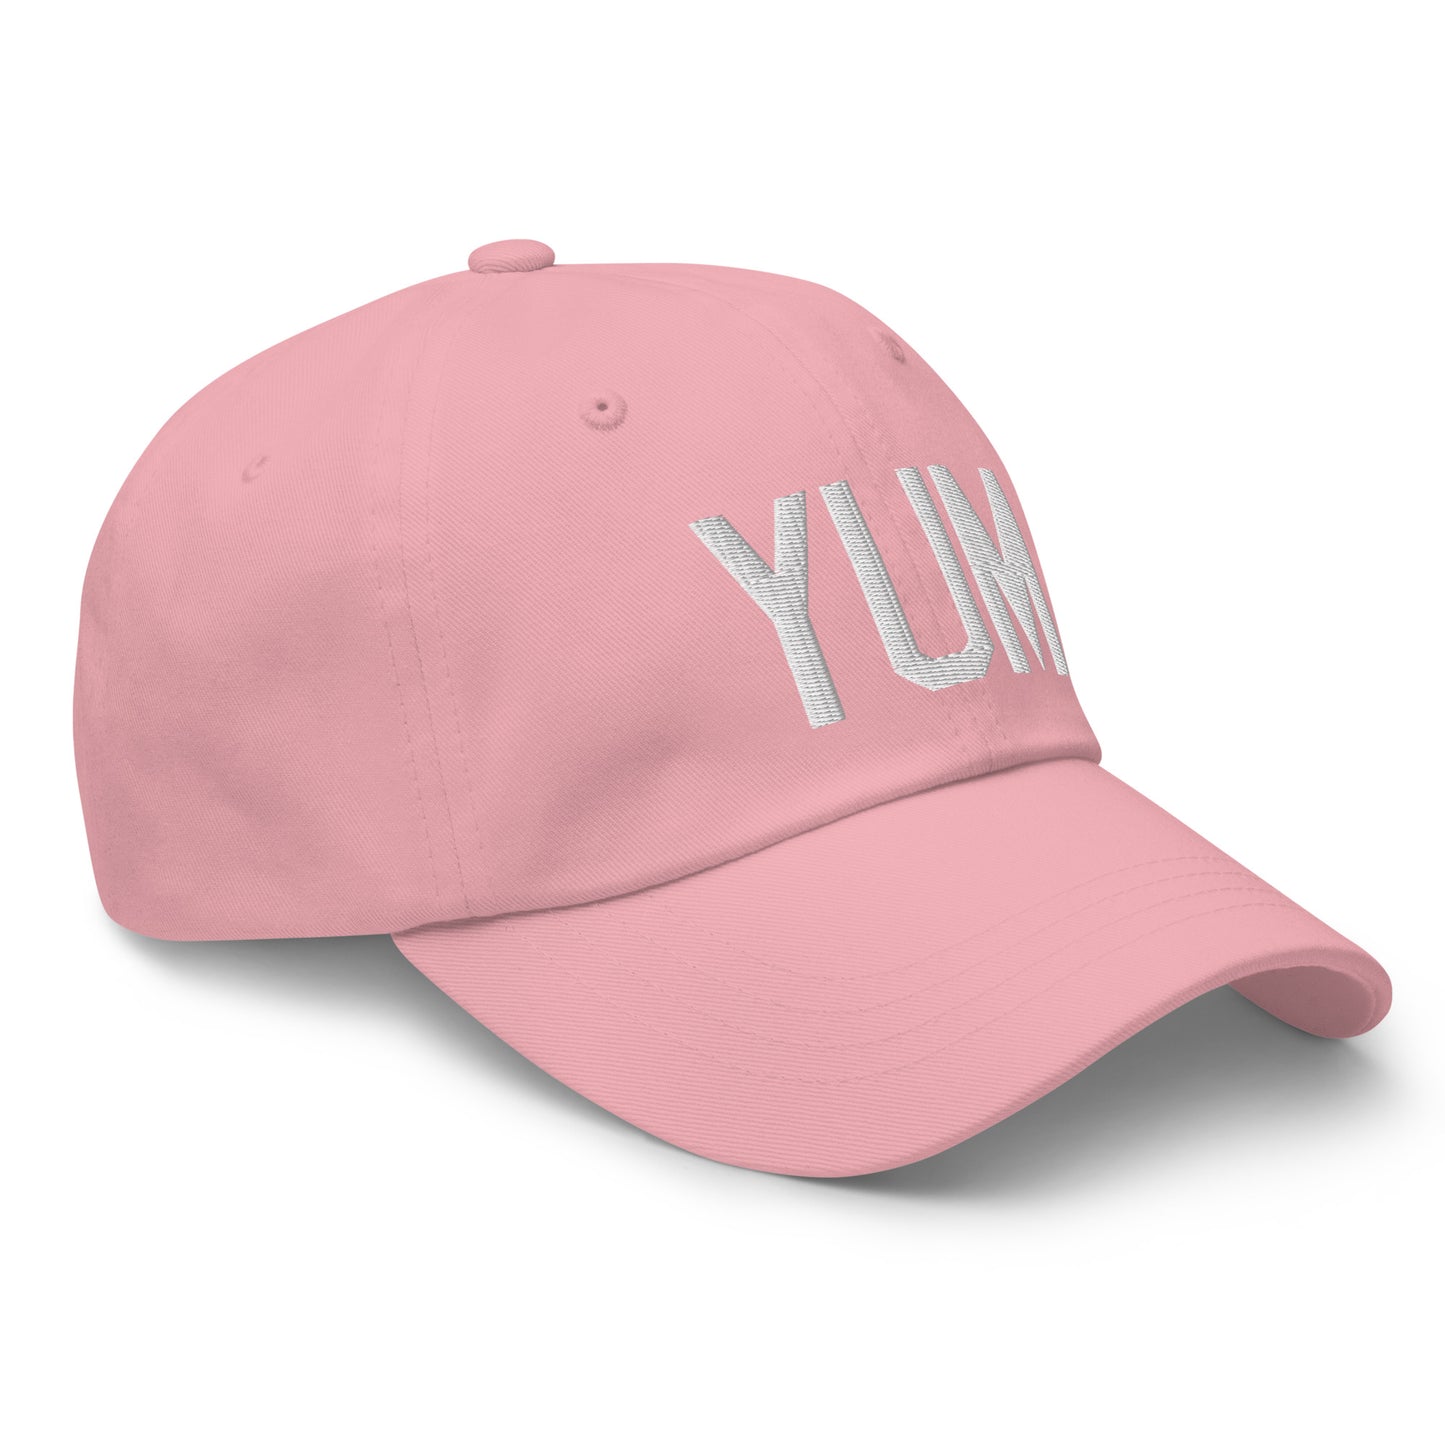 Airport Code Baseball Cap - White • YUM Yuma • YHM Designs - Image 26